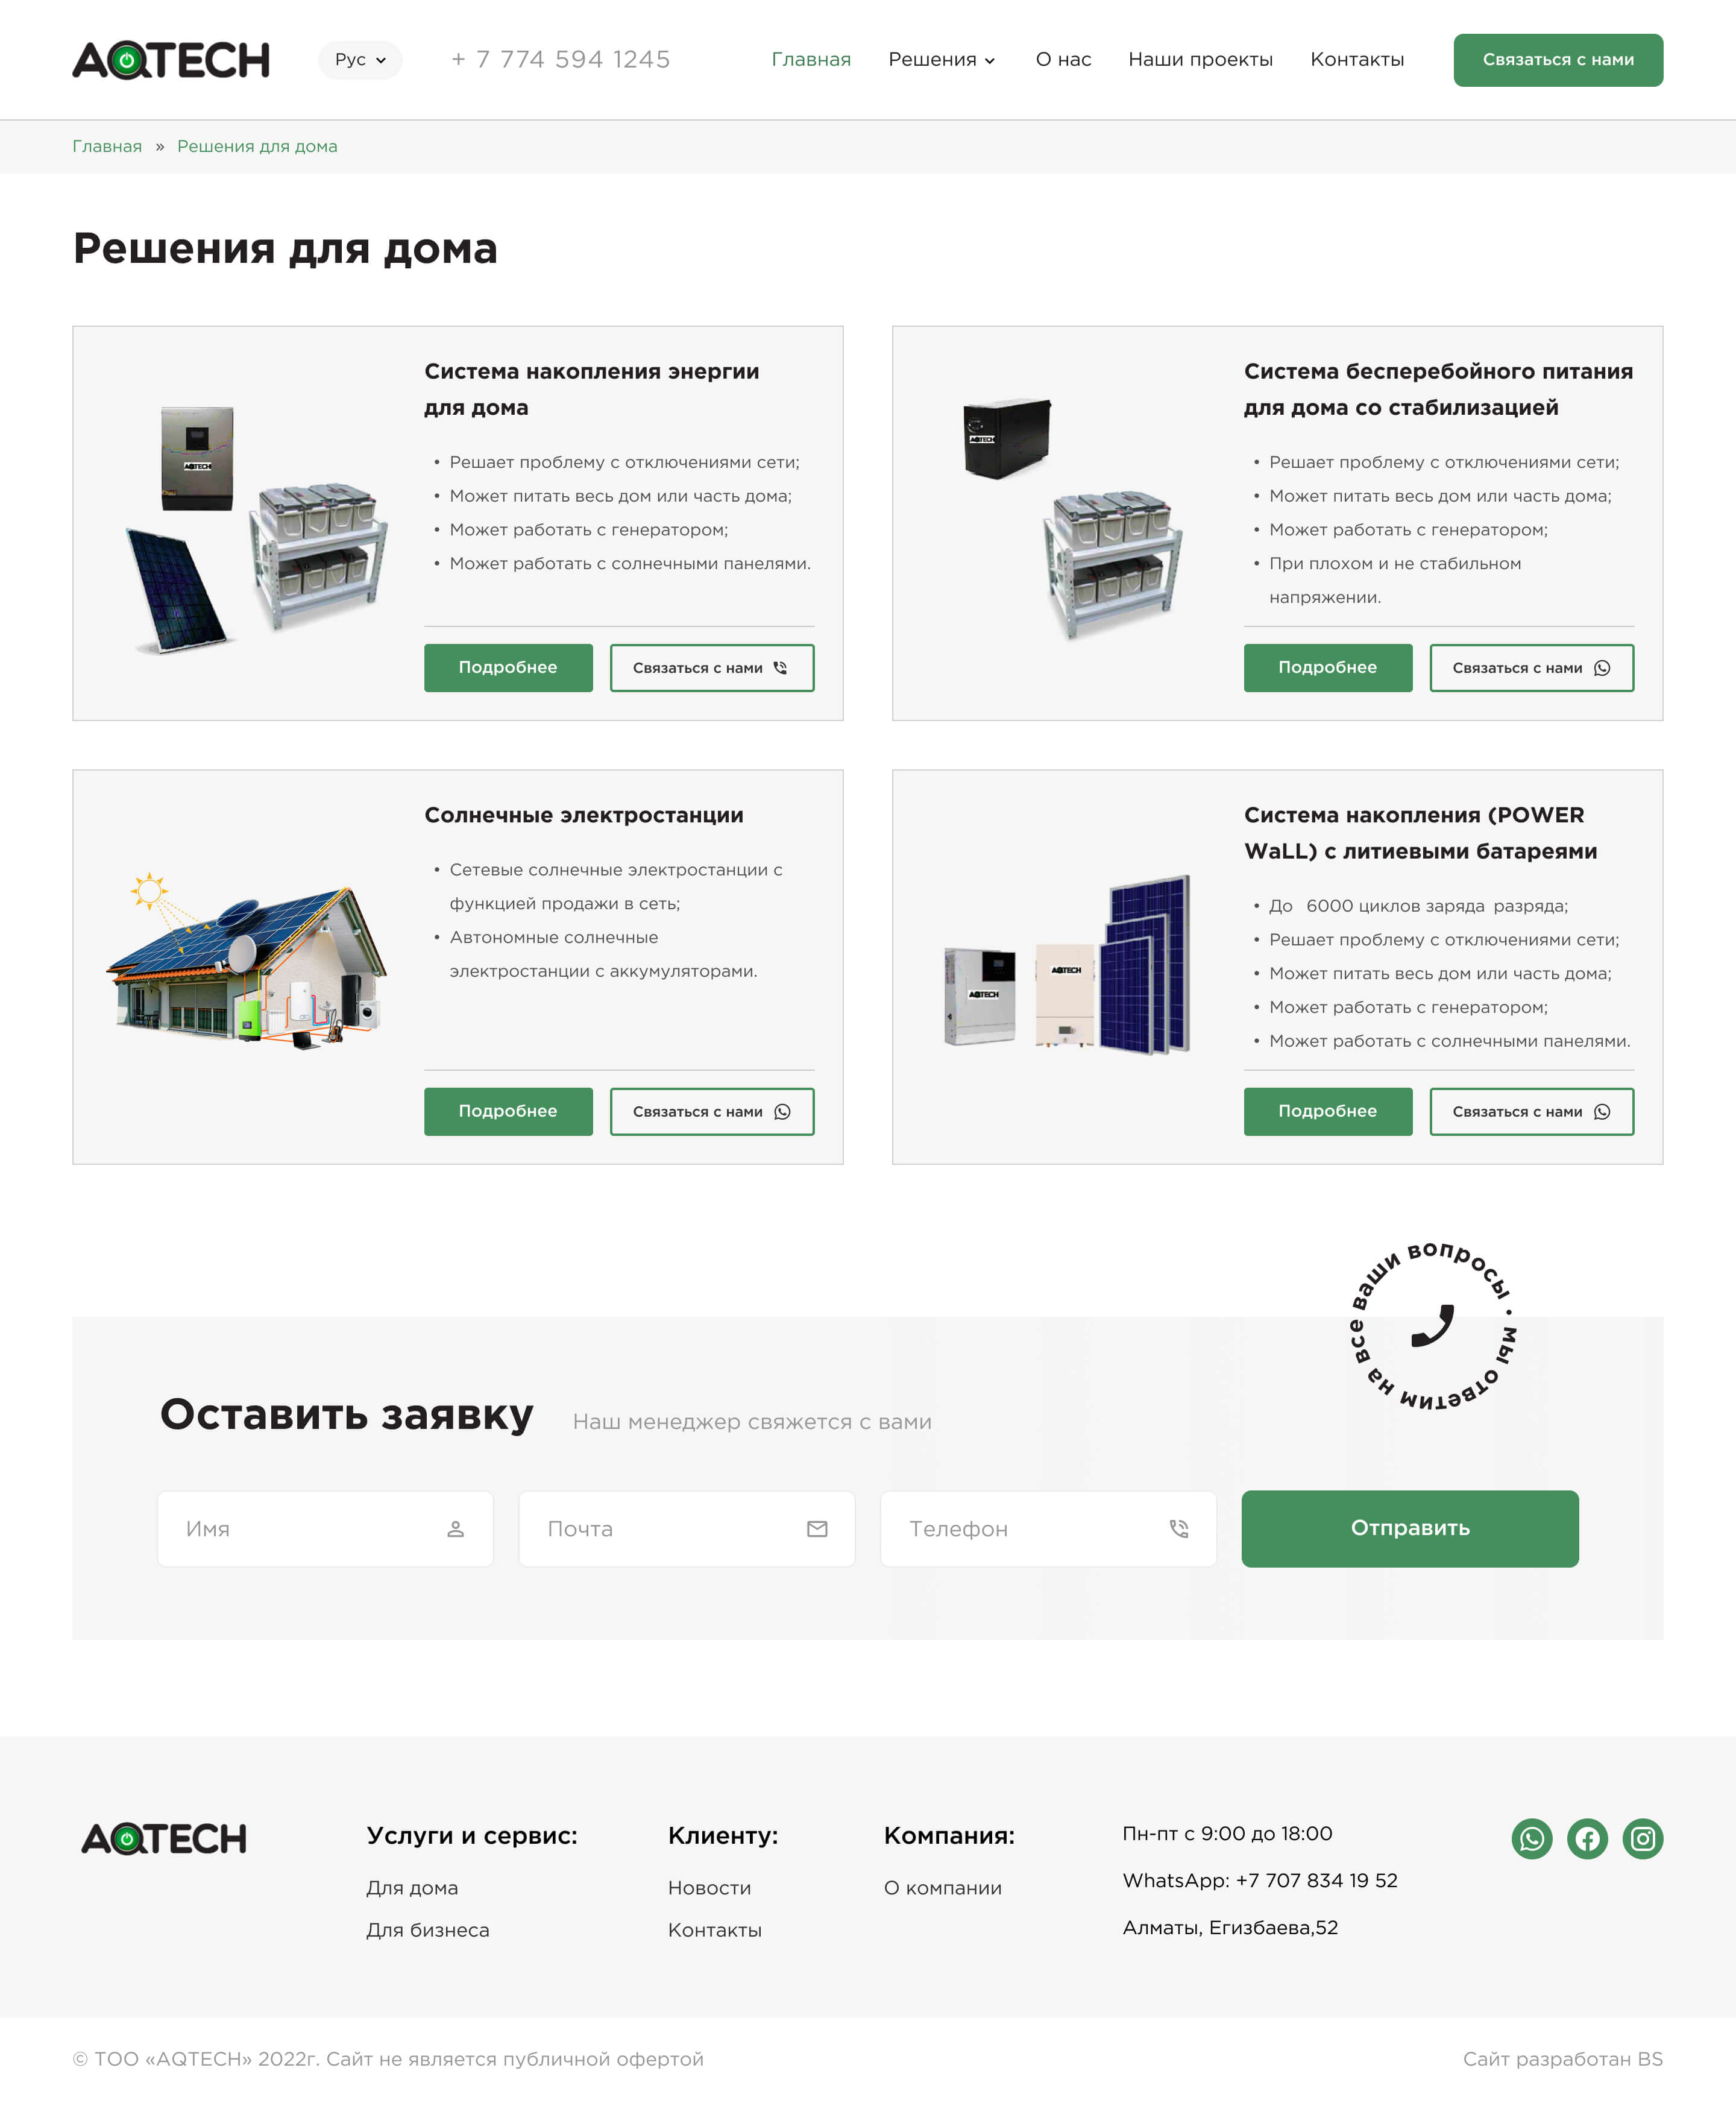 Дизайн сайта AQTech для ПК